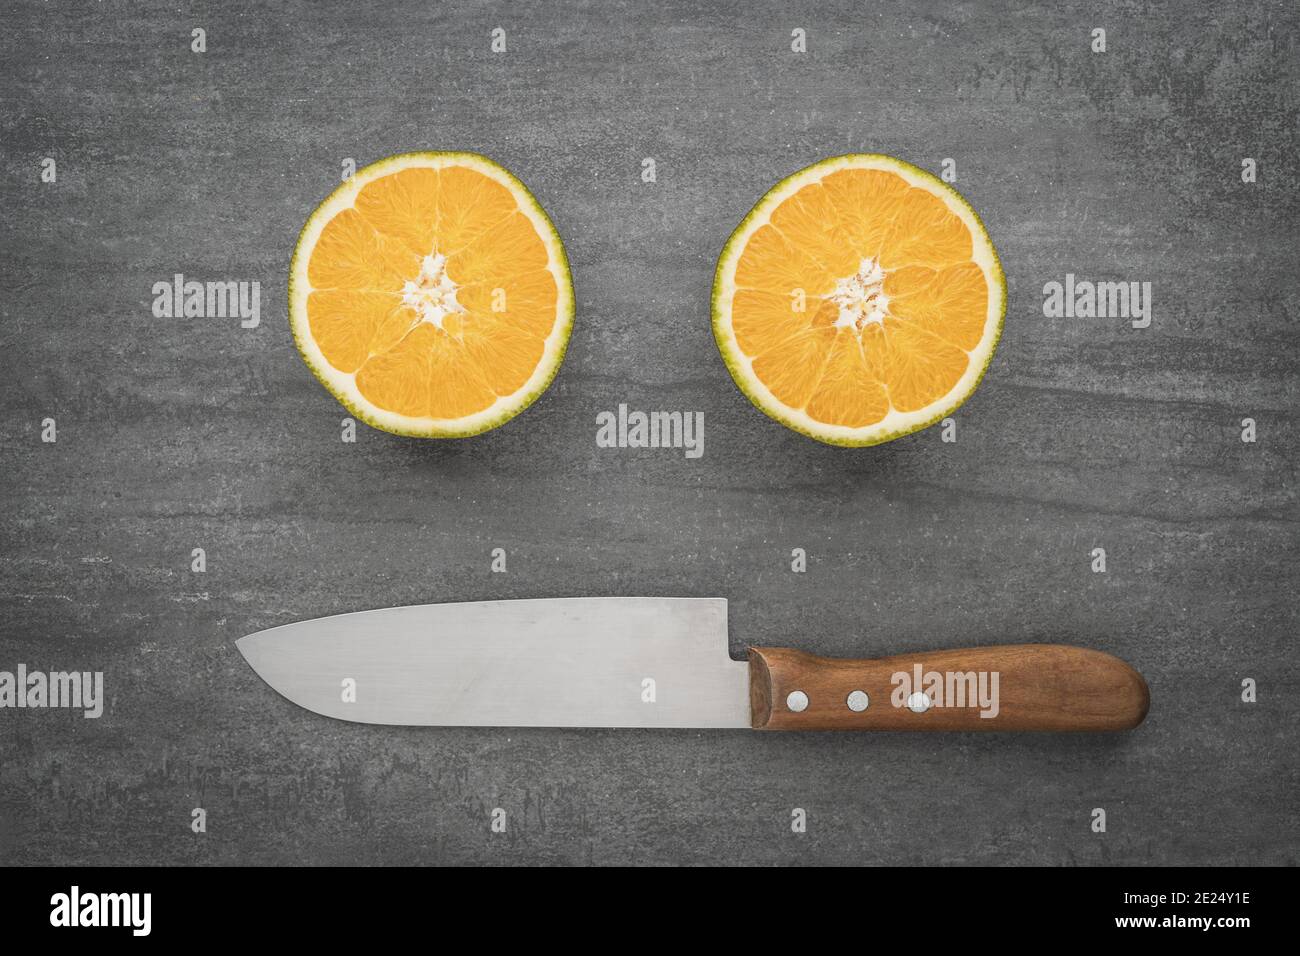 Un visage souriant fait d'un couteau et d'oranges. Des agrumes sains, pleins de vitamines, coupés en deux. Banque D'Images